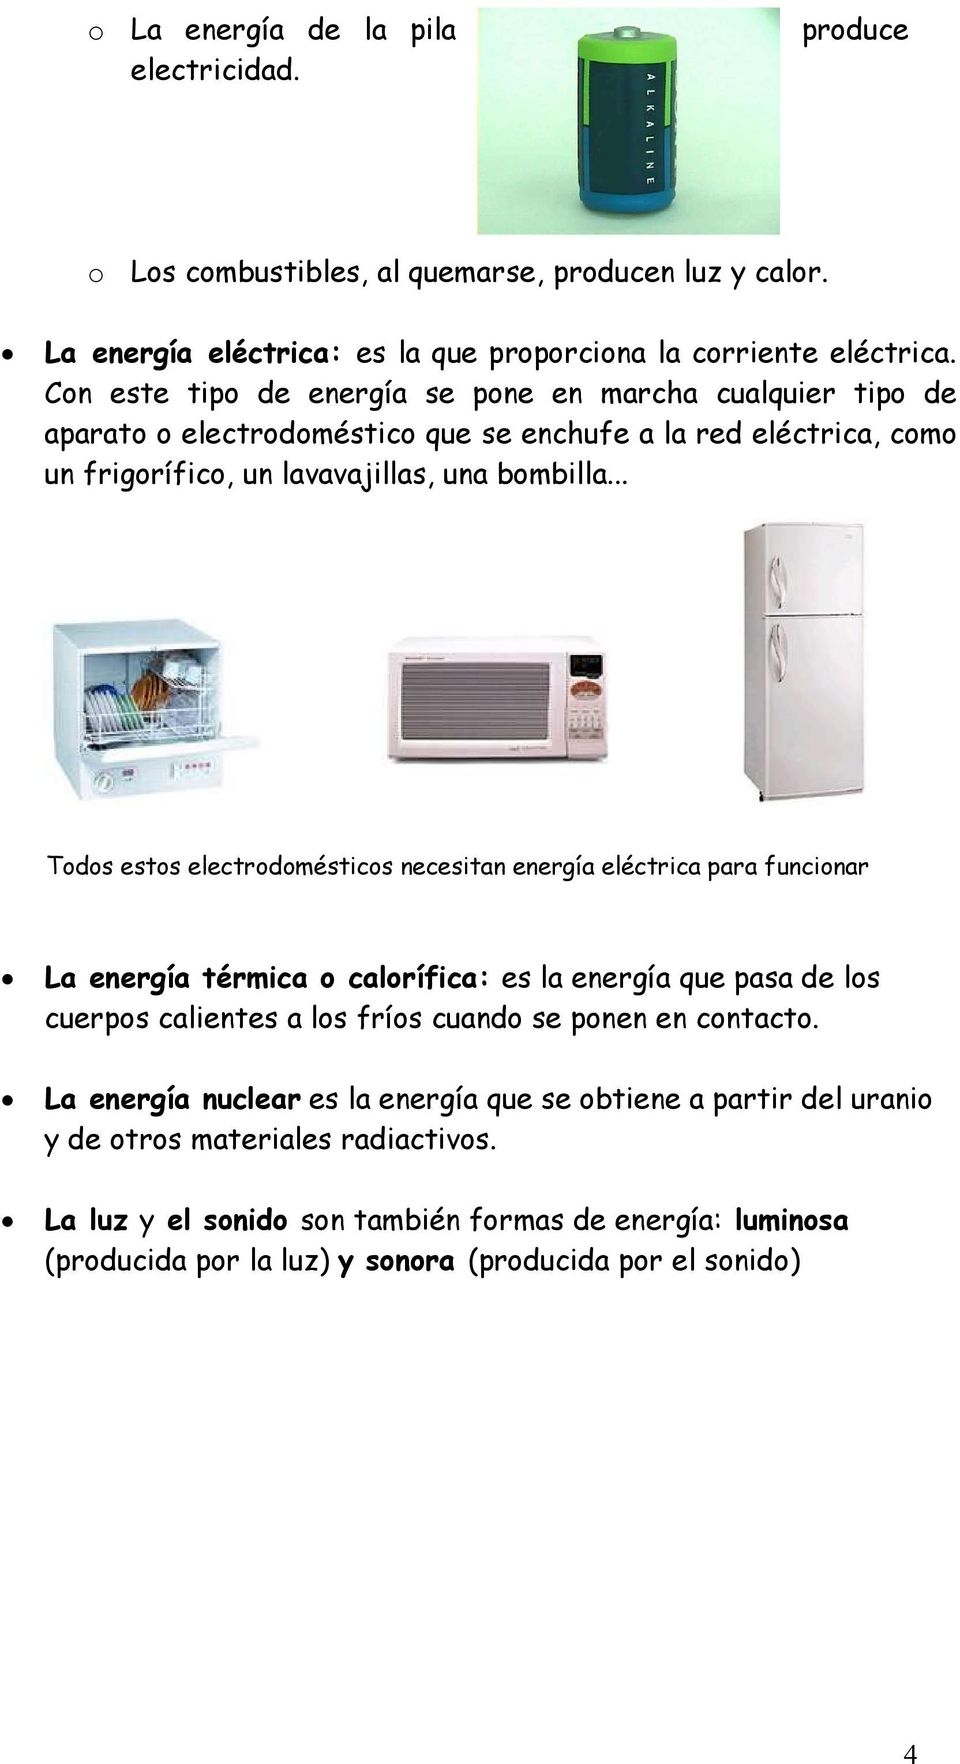 .. Todos estos electrodomésticos necesitan energía eléctrica para funcionar a energía térmica o calorífica: es la energía que pasa de los cuerpos calientes a los fríos cuando se ponen en